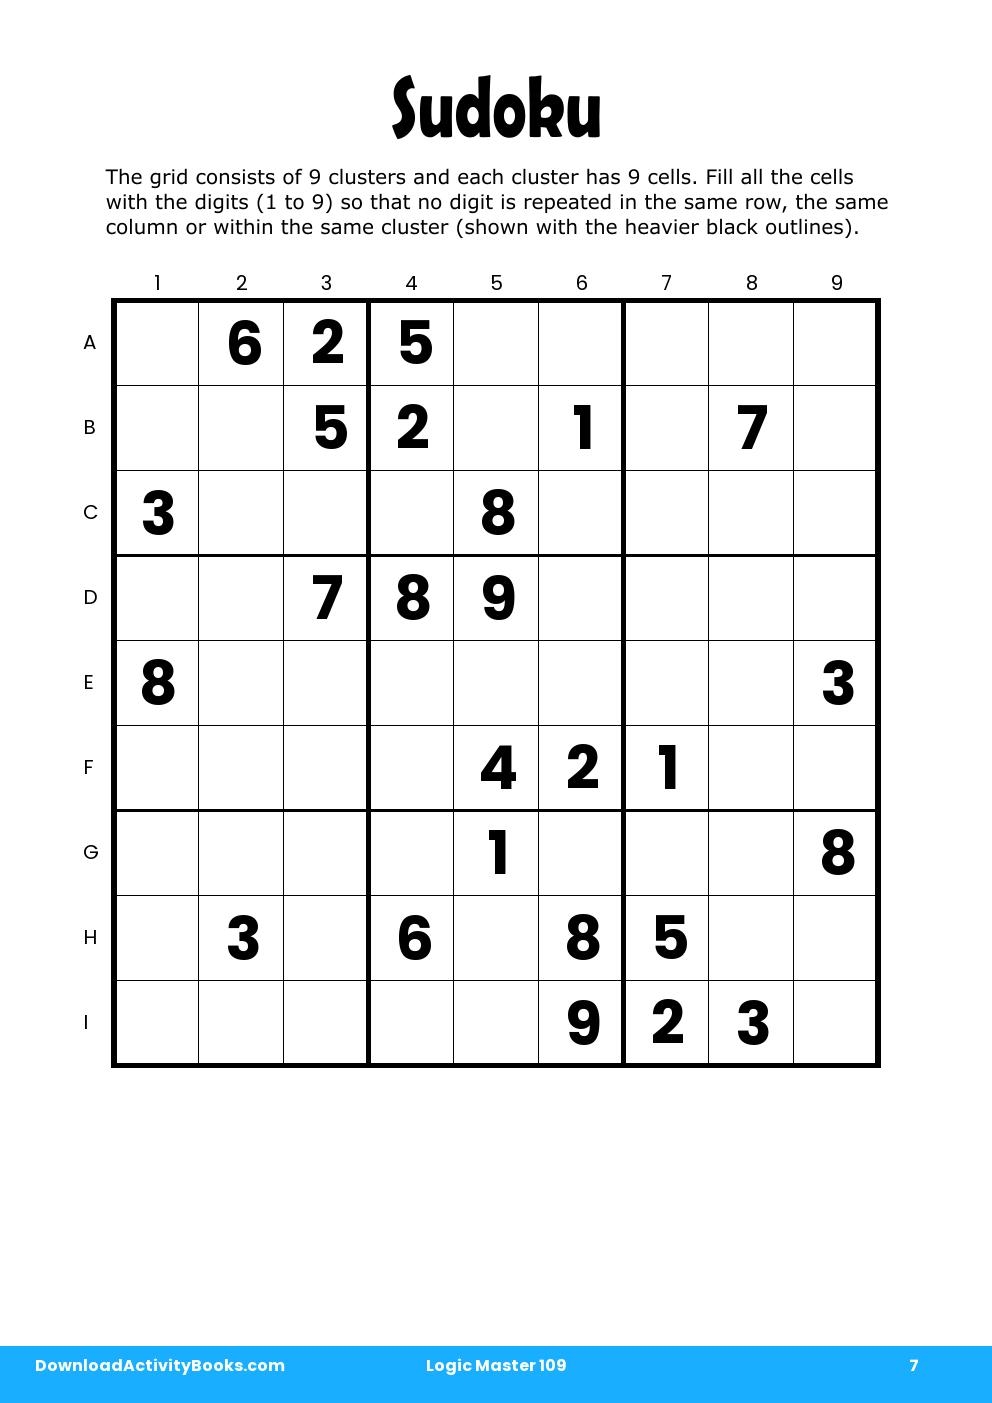 Sudoku in Logic Master 109